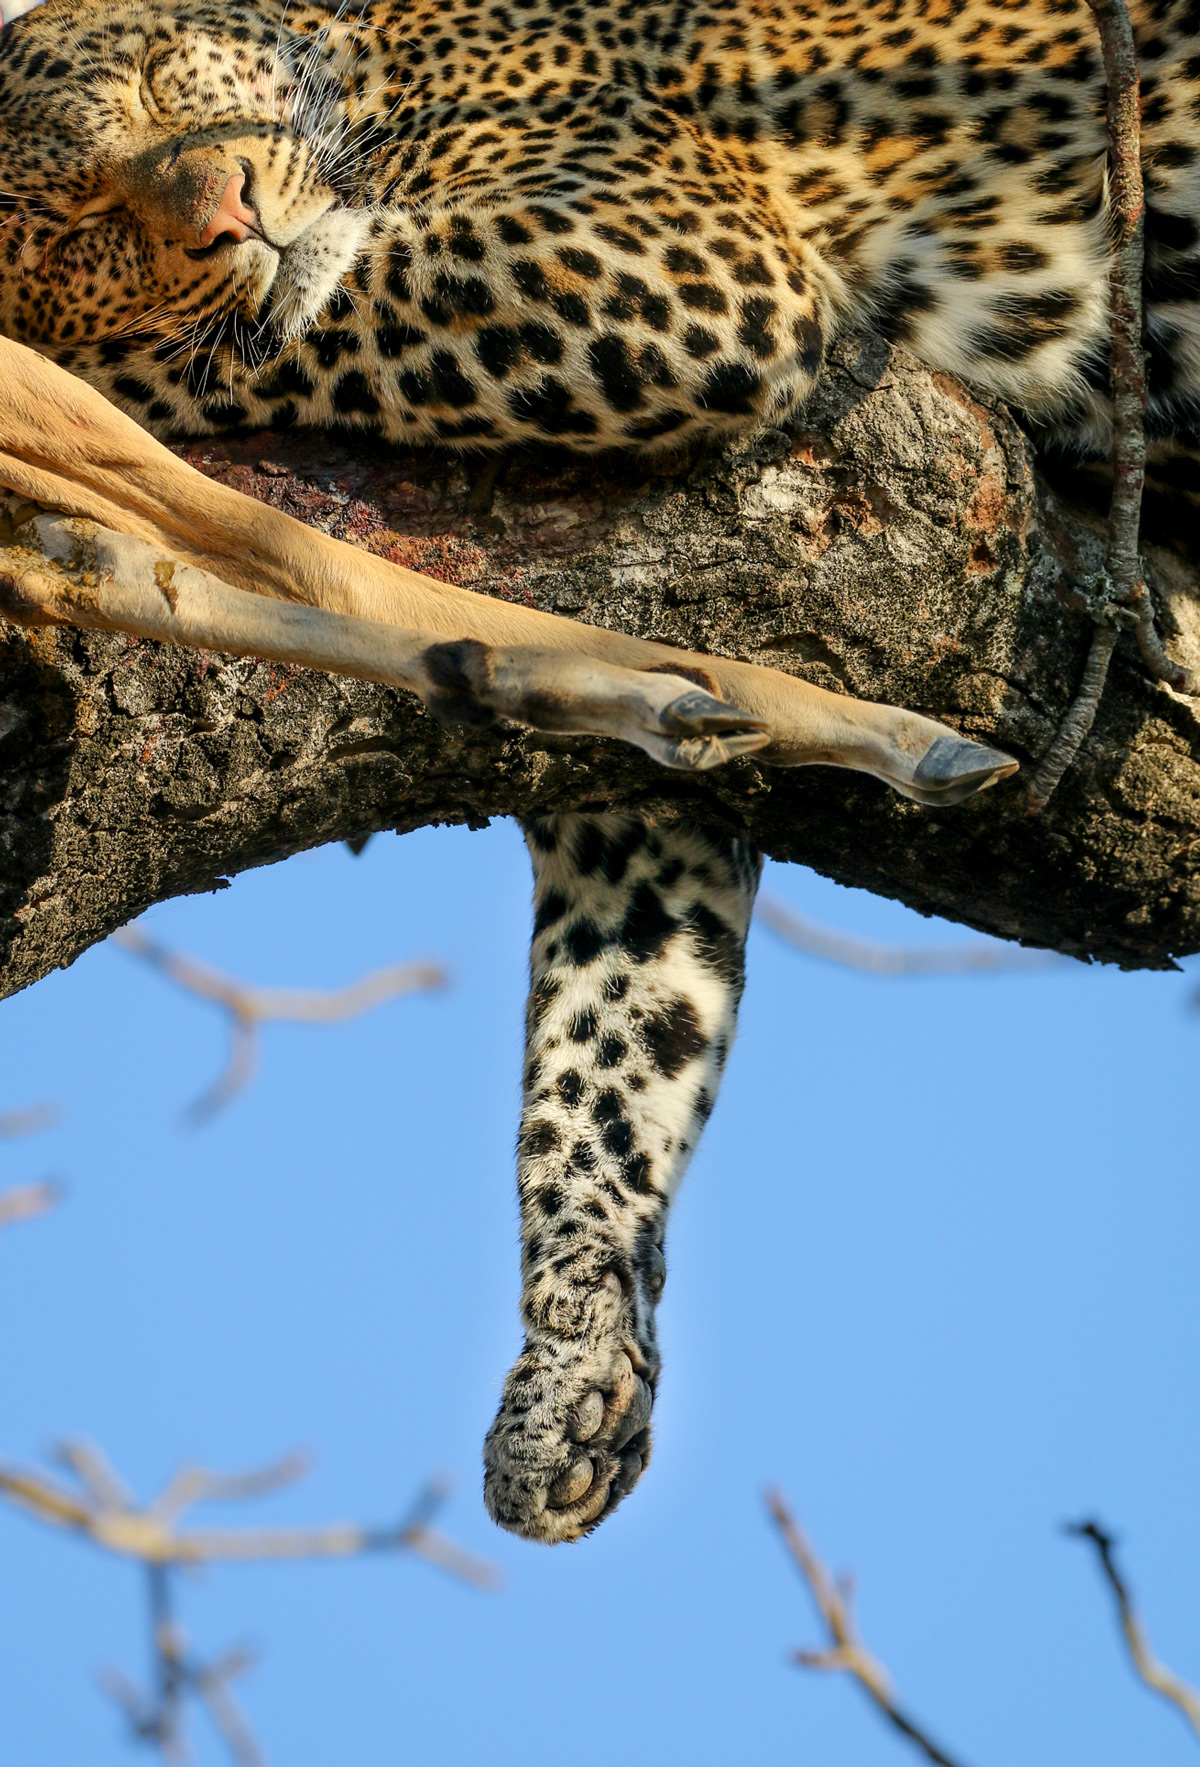 A leopard rests after eating in Kruger National Park, South Africa © Janine Malan